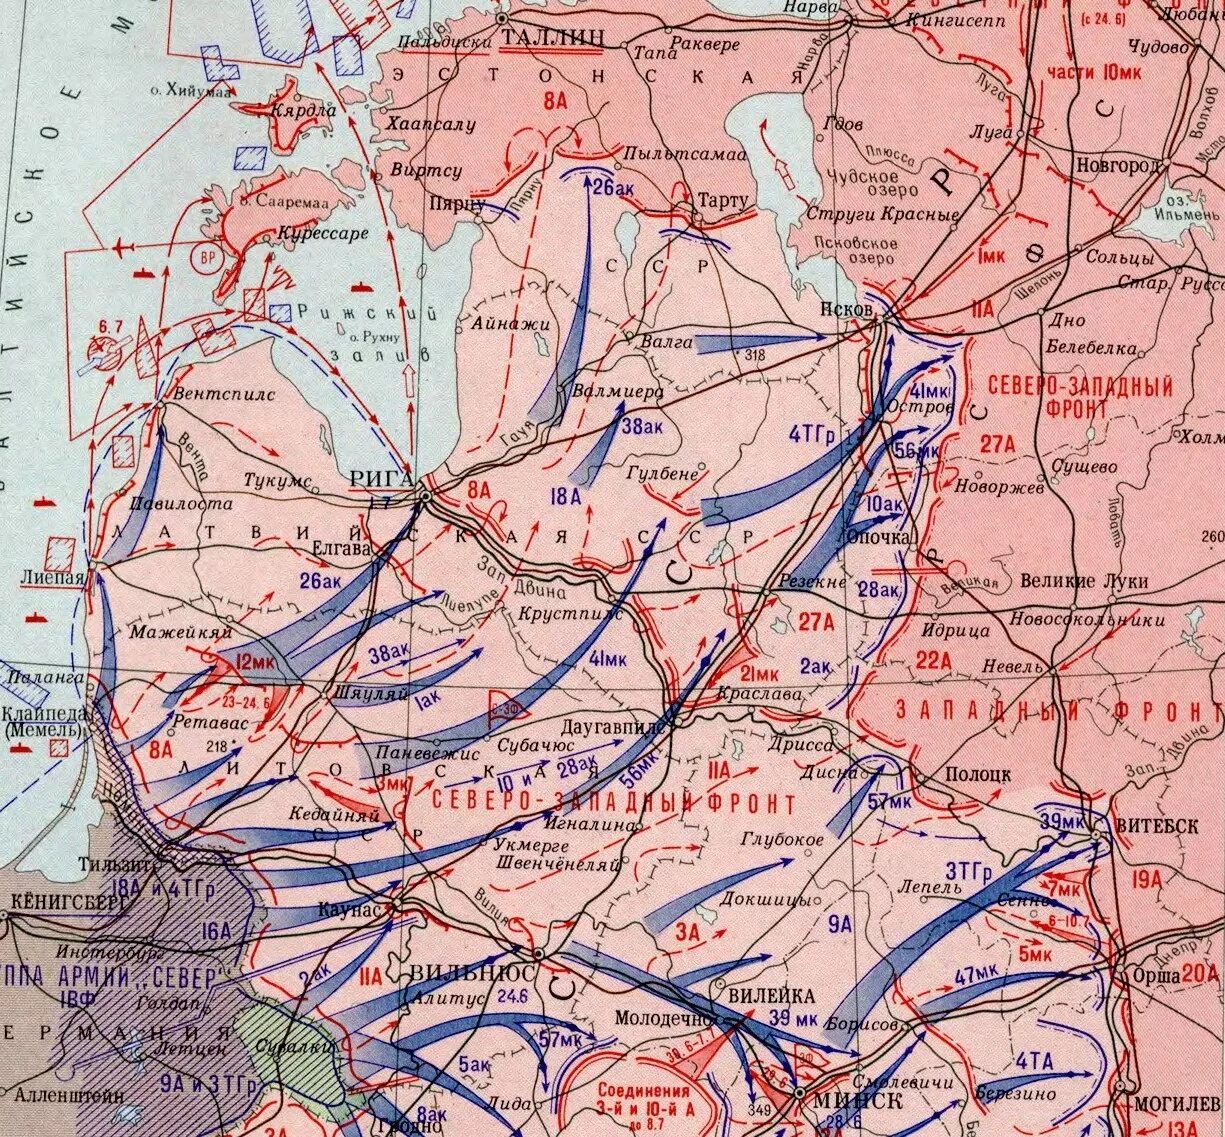 Прибалтийская Военная операция 22 июня 9 июля 1941. Северо-Западный фронт 1941 карты. Прибалтийская стратегическая оборонительная операция 1941 карта. Оборона Прибалтики 1941 карта. 22 июня операция